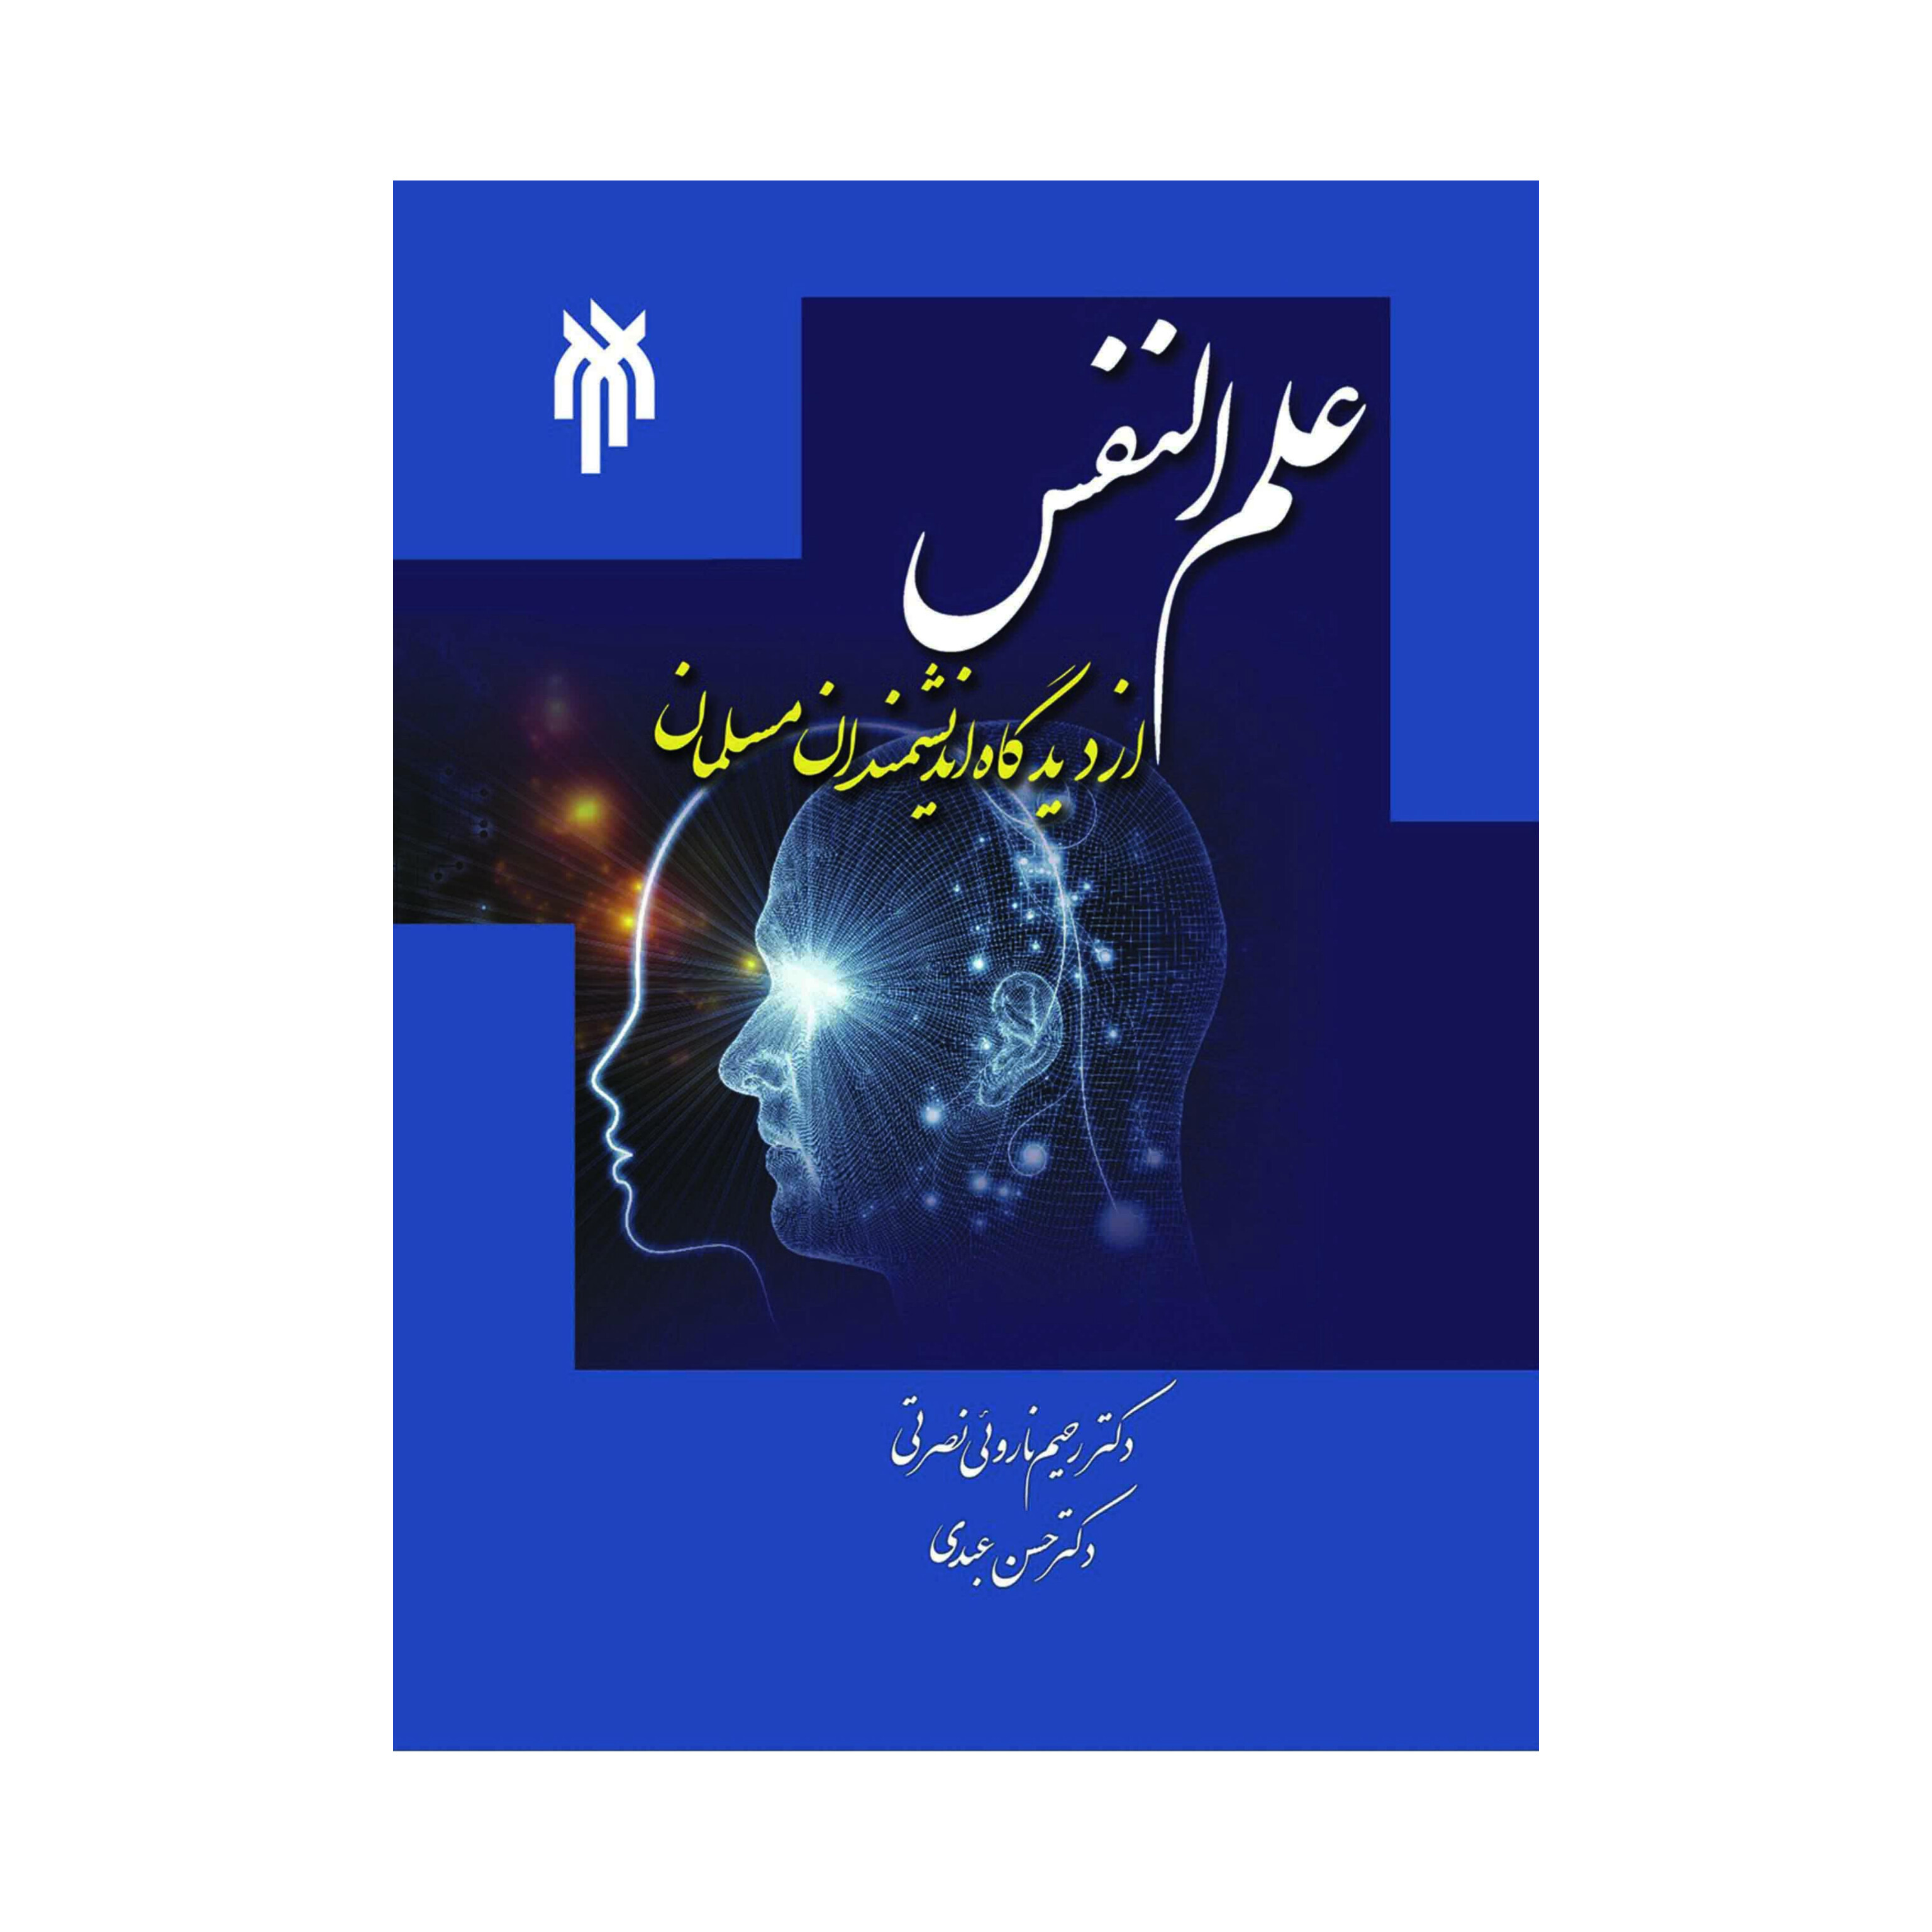 کتاب علم النفس از دیدگاه اندیشمندان مسلمان/ دکتر رحیم ناروئی نصرتی، دکتر حسن عبدی